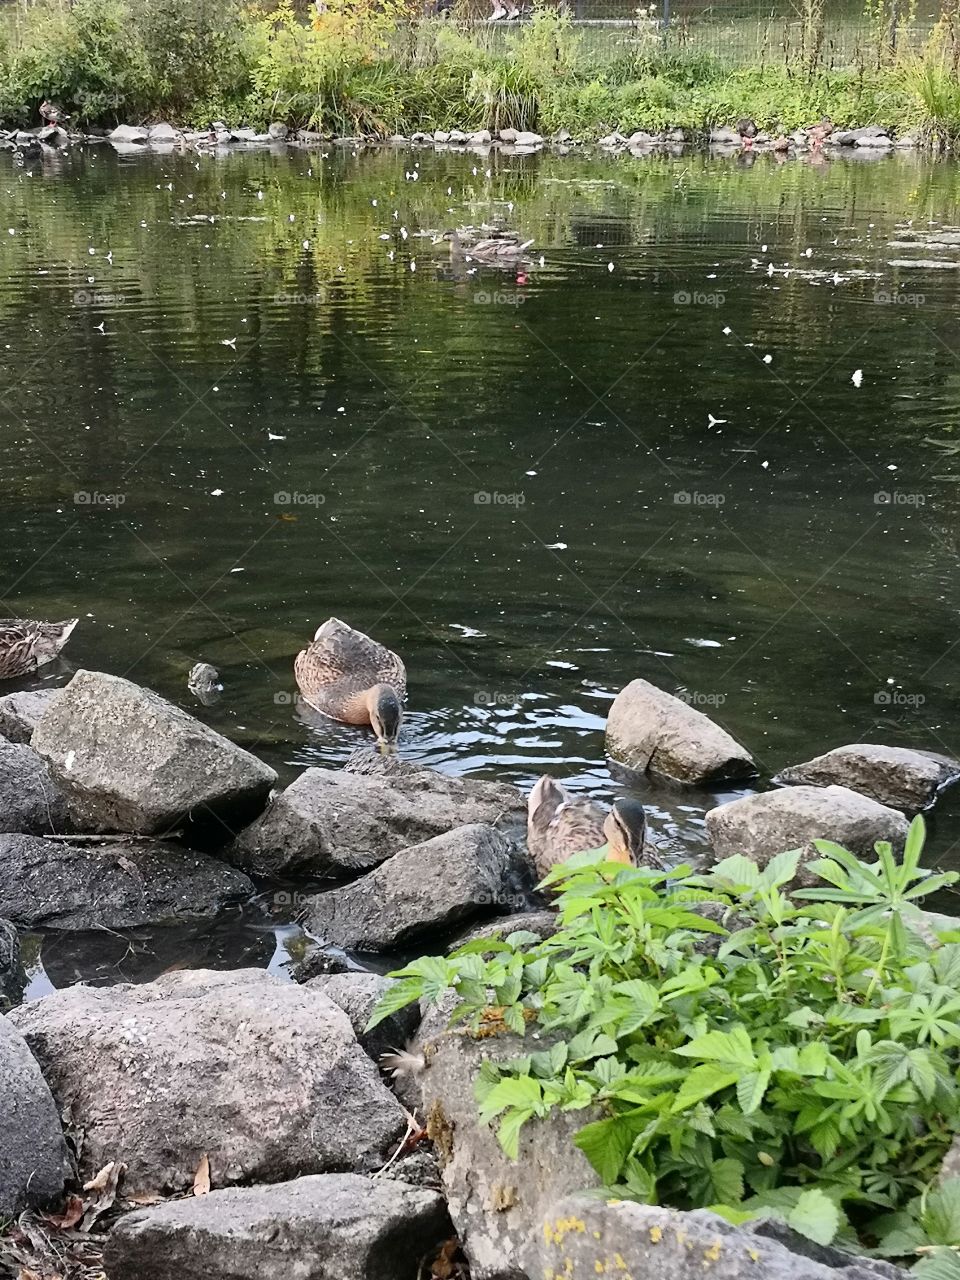 Nature, green, summer, duck